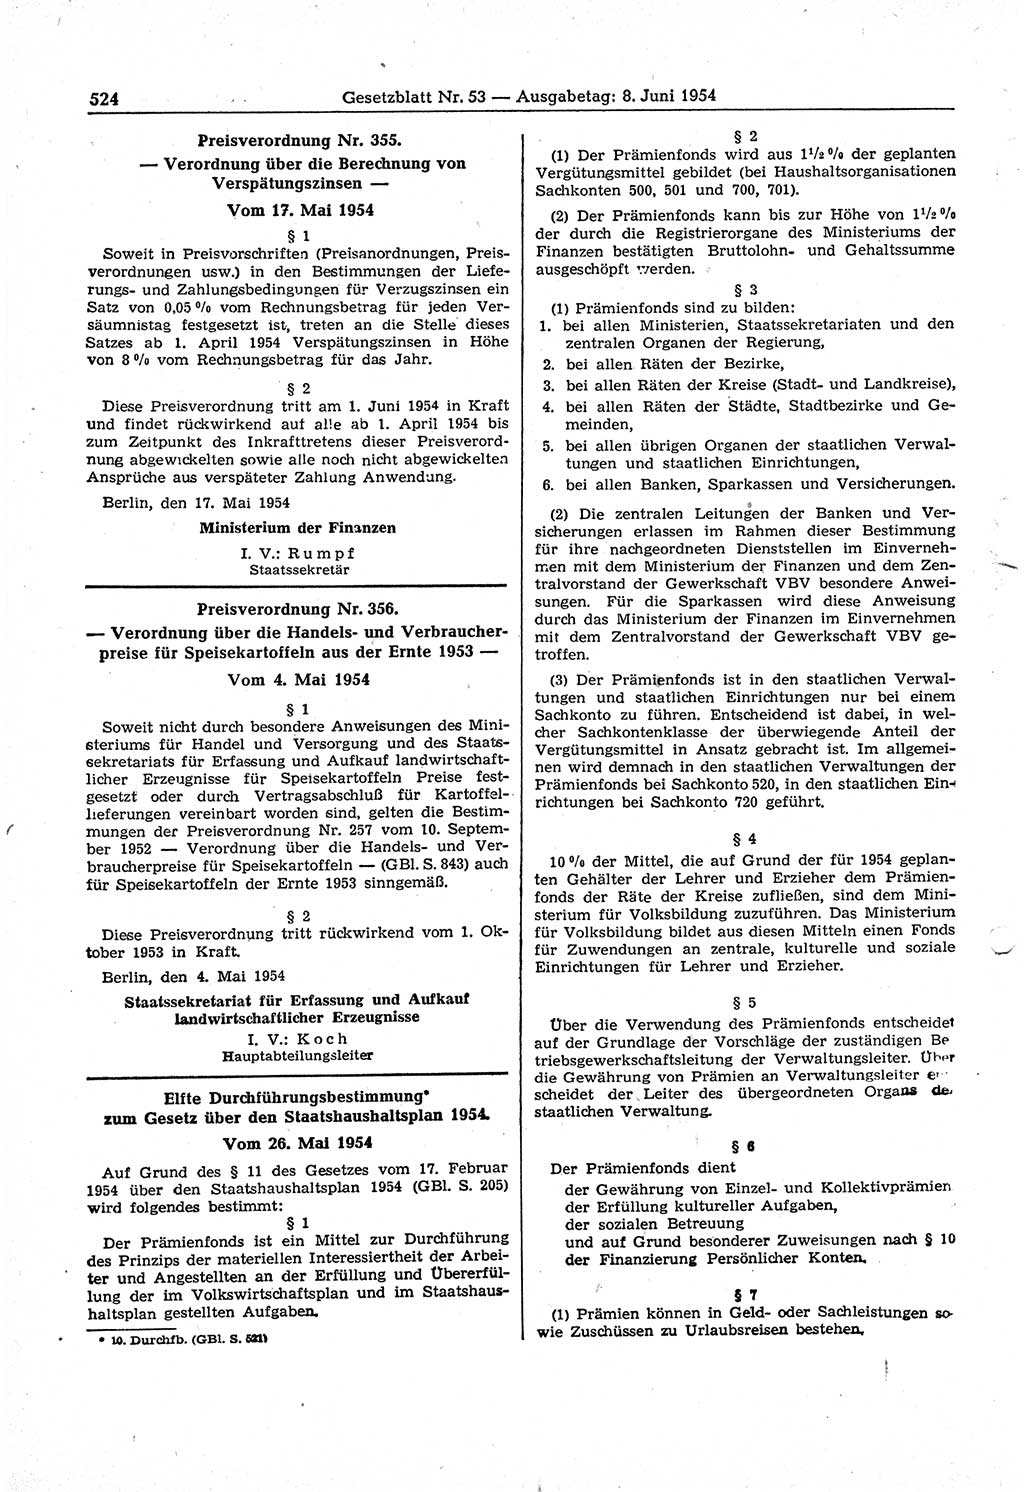 Gesetzblatt (GBl.) der Deutschen Demokratischen Republik (DDR) 1954, Seite 524 (GBl. DDR 1954, S. 524)